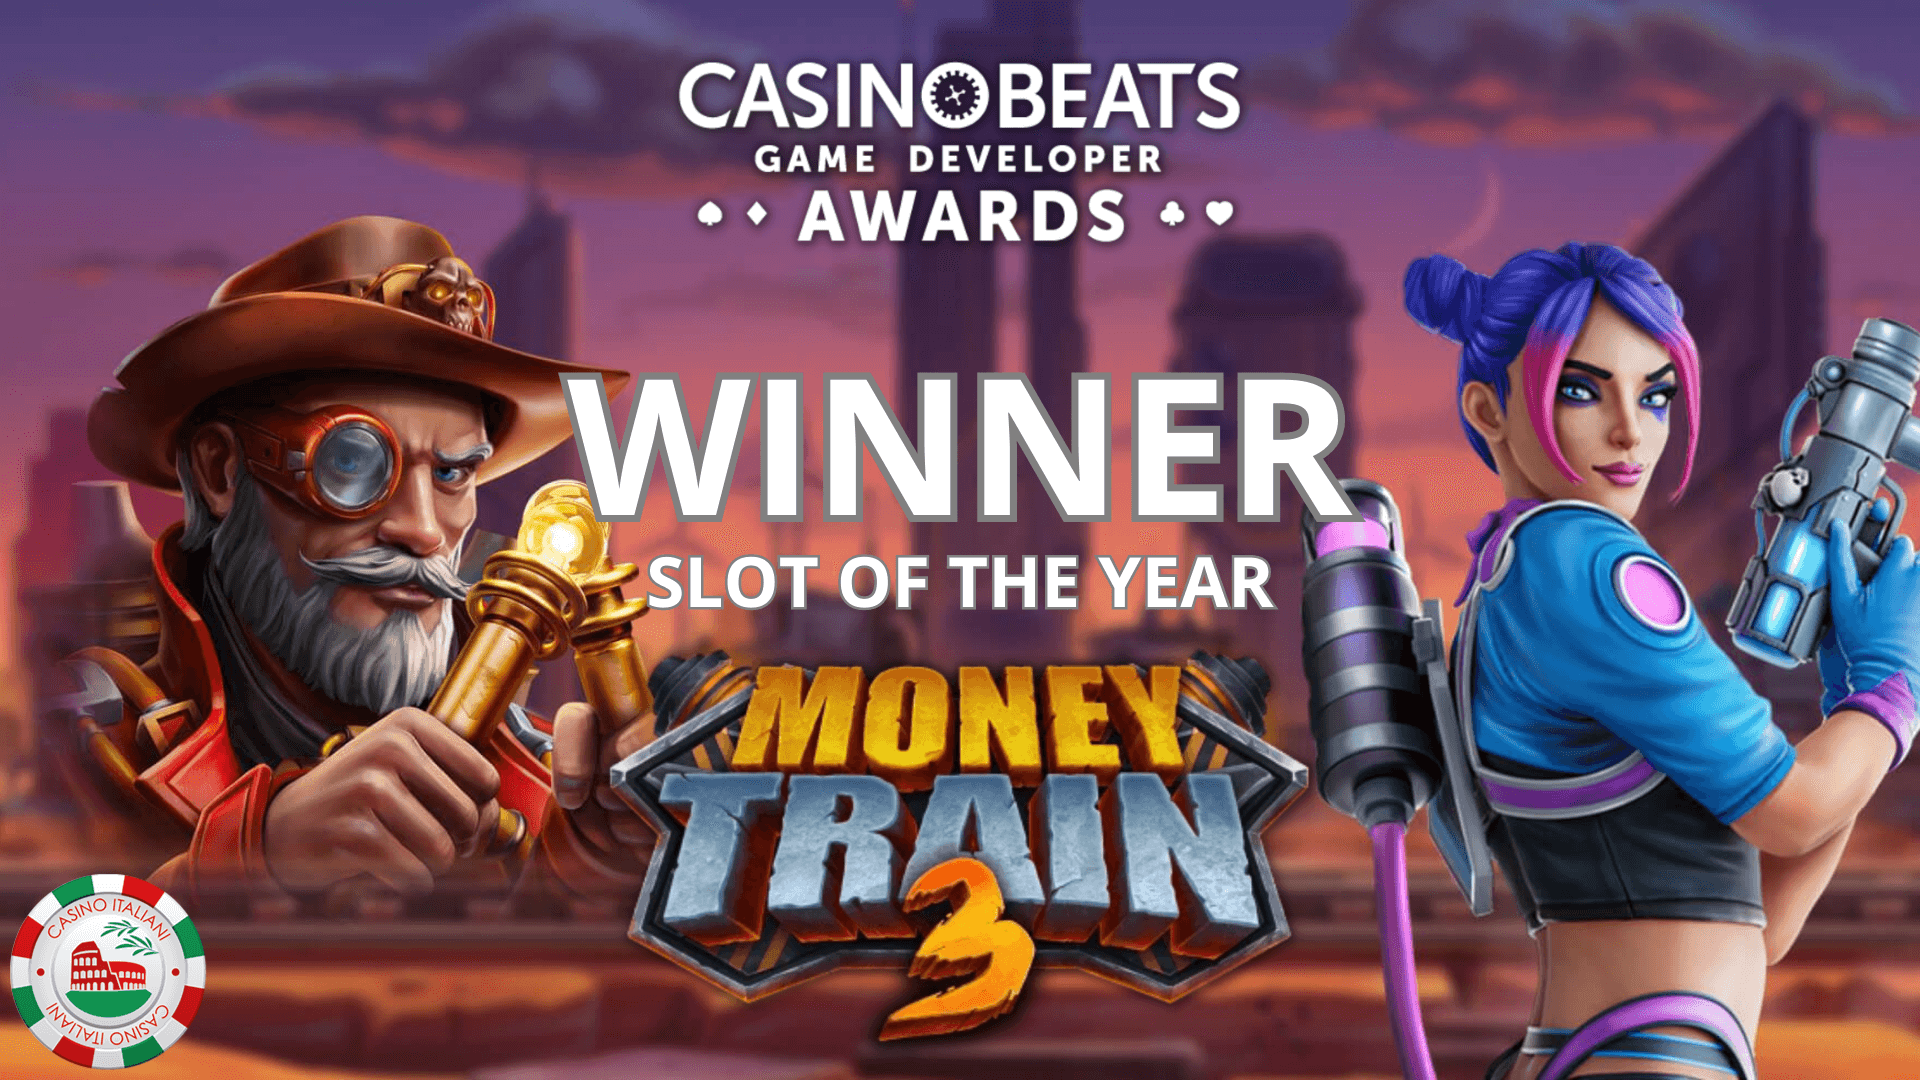 Penghargaan Pengembang Game CasinoBeats, Money Train 3 adalah Slot of the Year.  Penghargaan Prestasi Seumur Hidup untuk Pencarian Gonzo